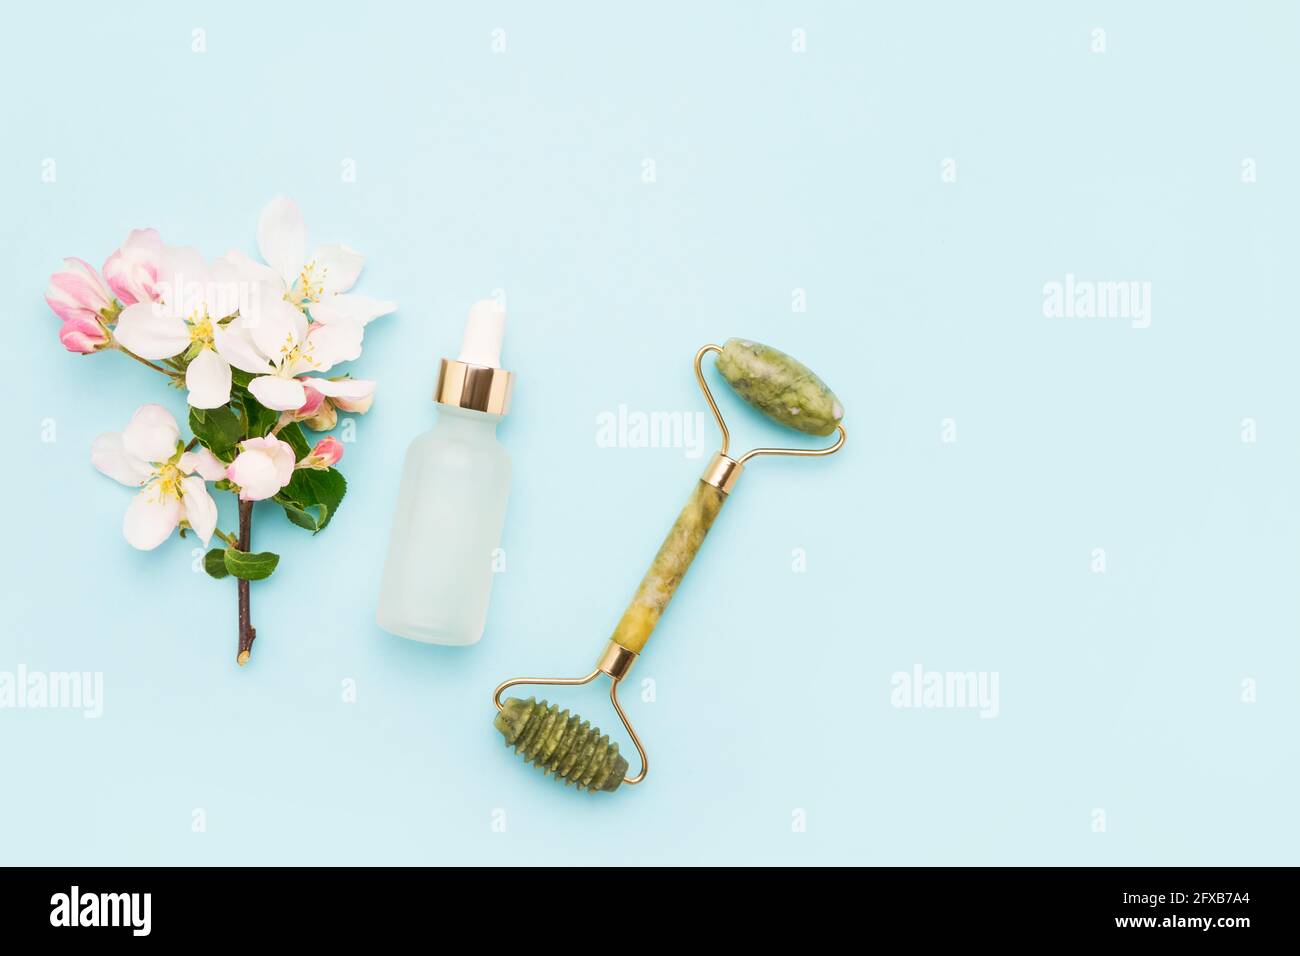 Rouleau de Jade pour le massage, flacon compte-gouttes en verre à usage médical et cosmétique et fleurs d'pommiers sur fond bleu clair. Concept SPA. À Banque D'Images